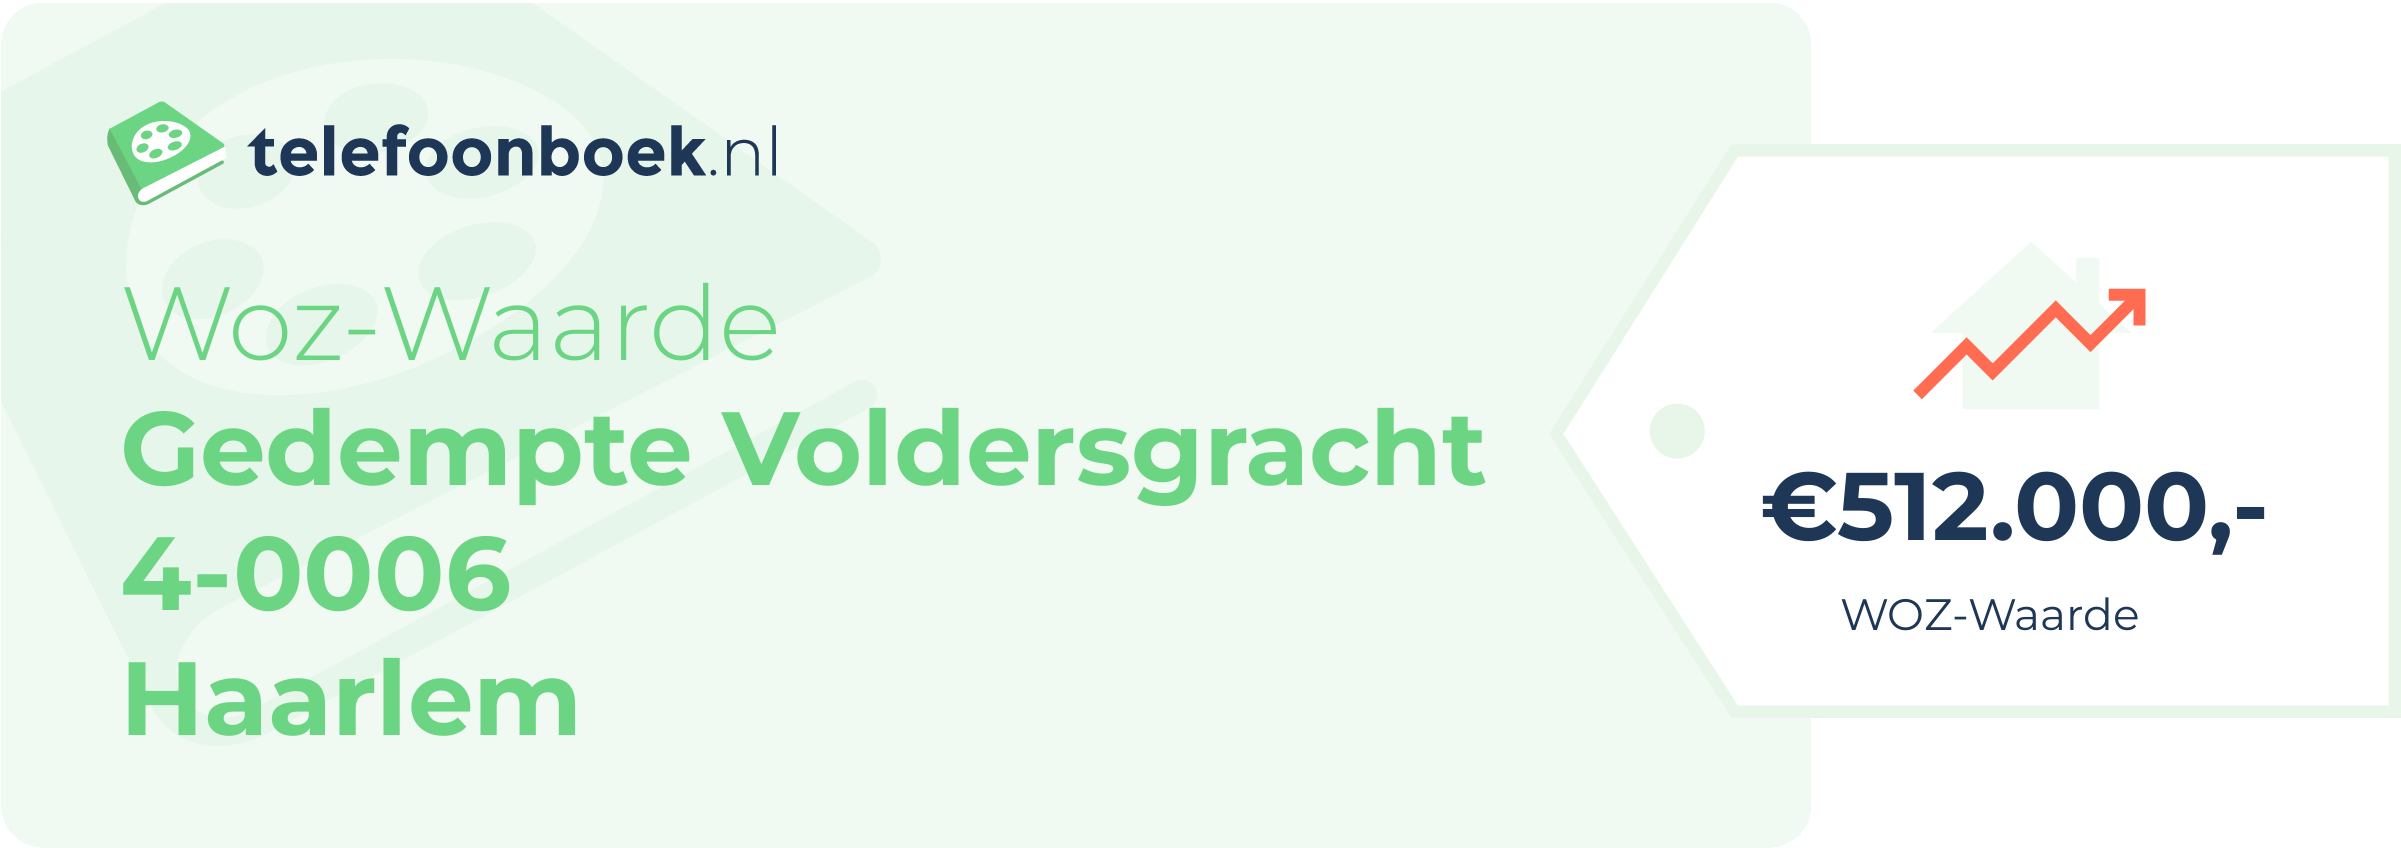 WOZ-waarde Gedempte Voldersgracht 4-0006 Haarlem